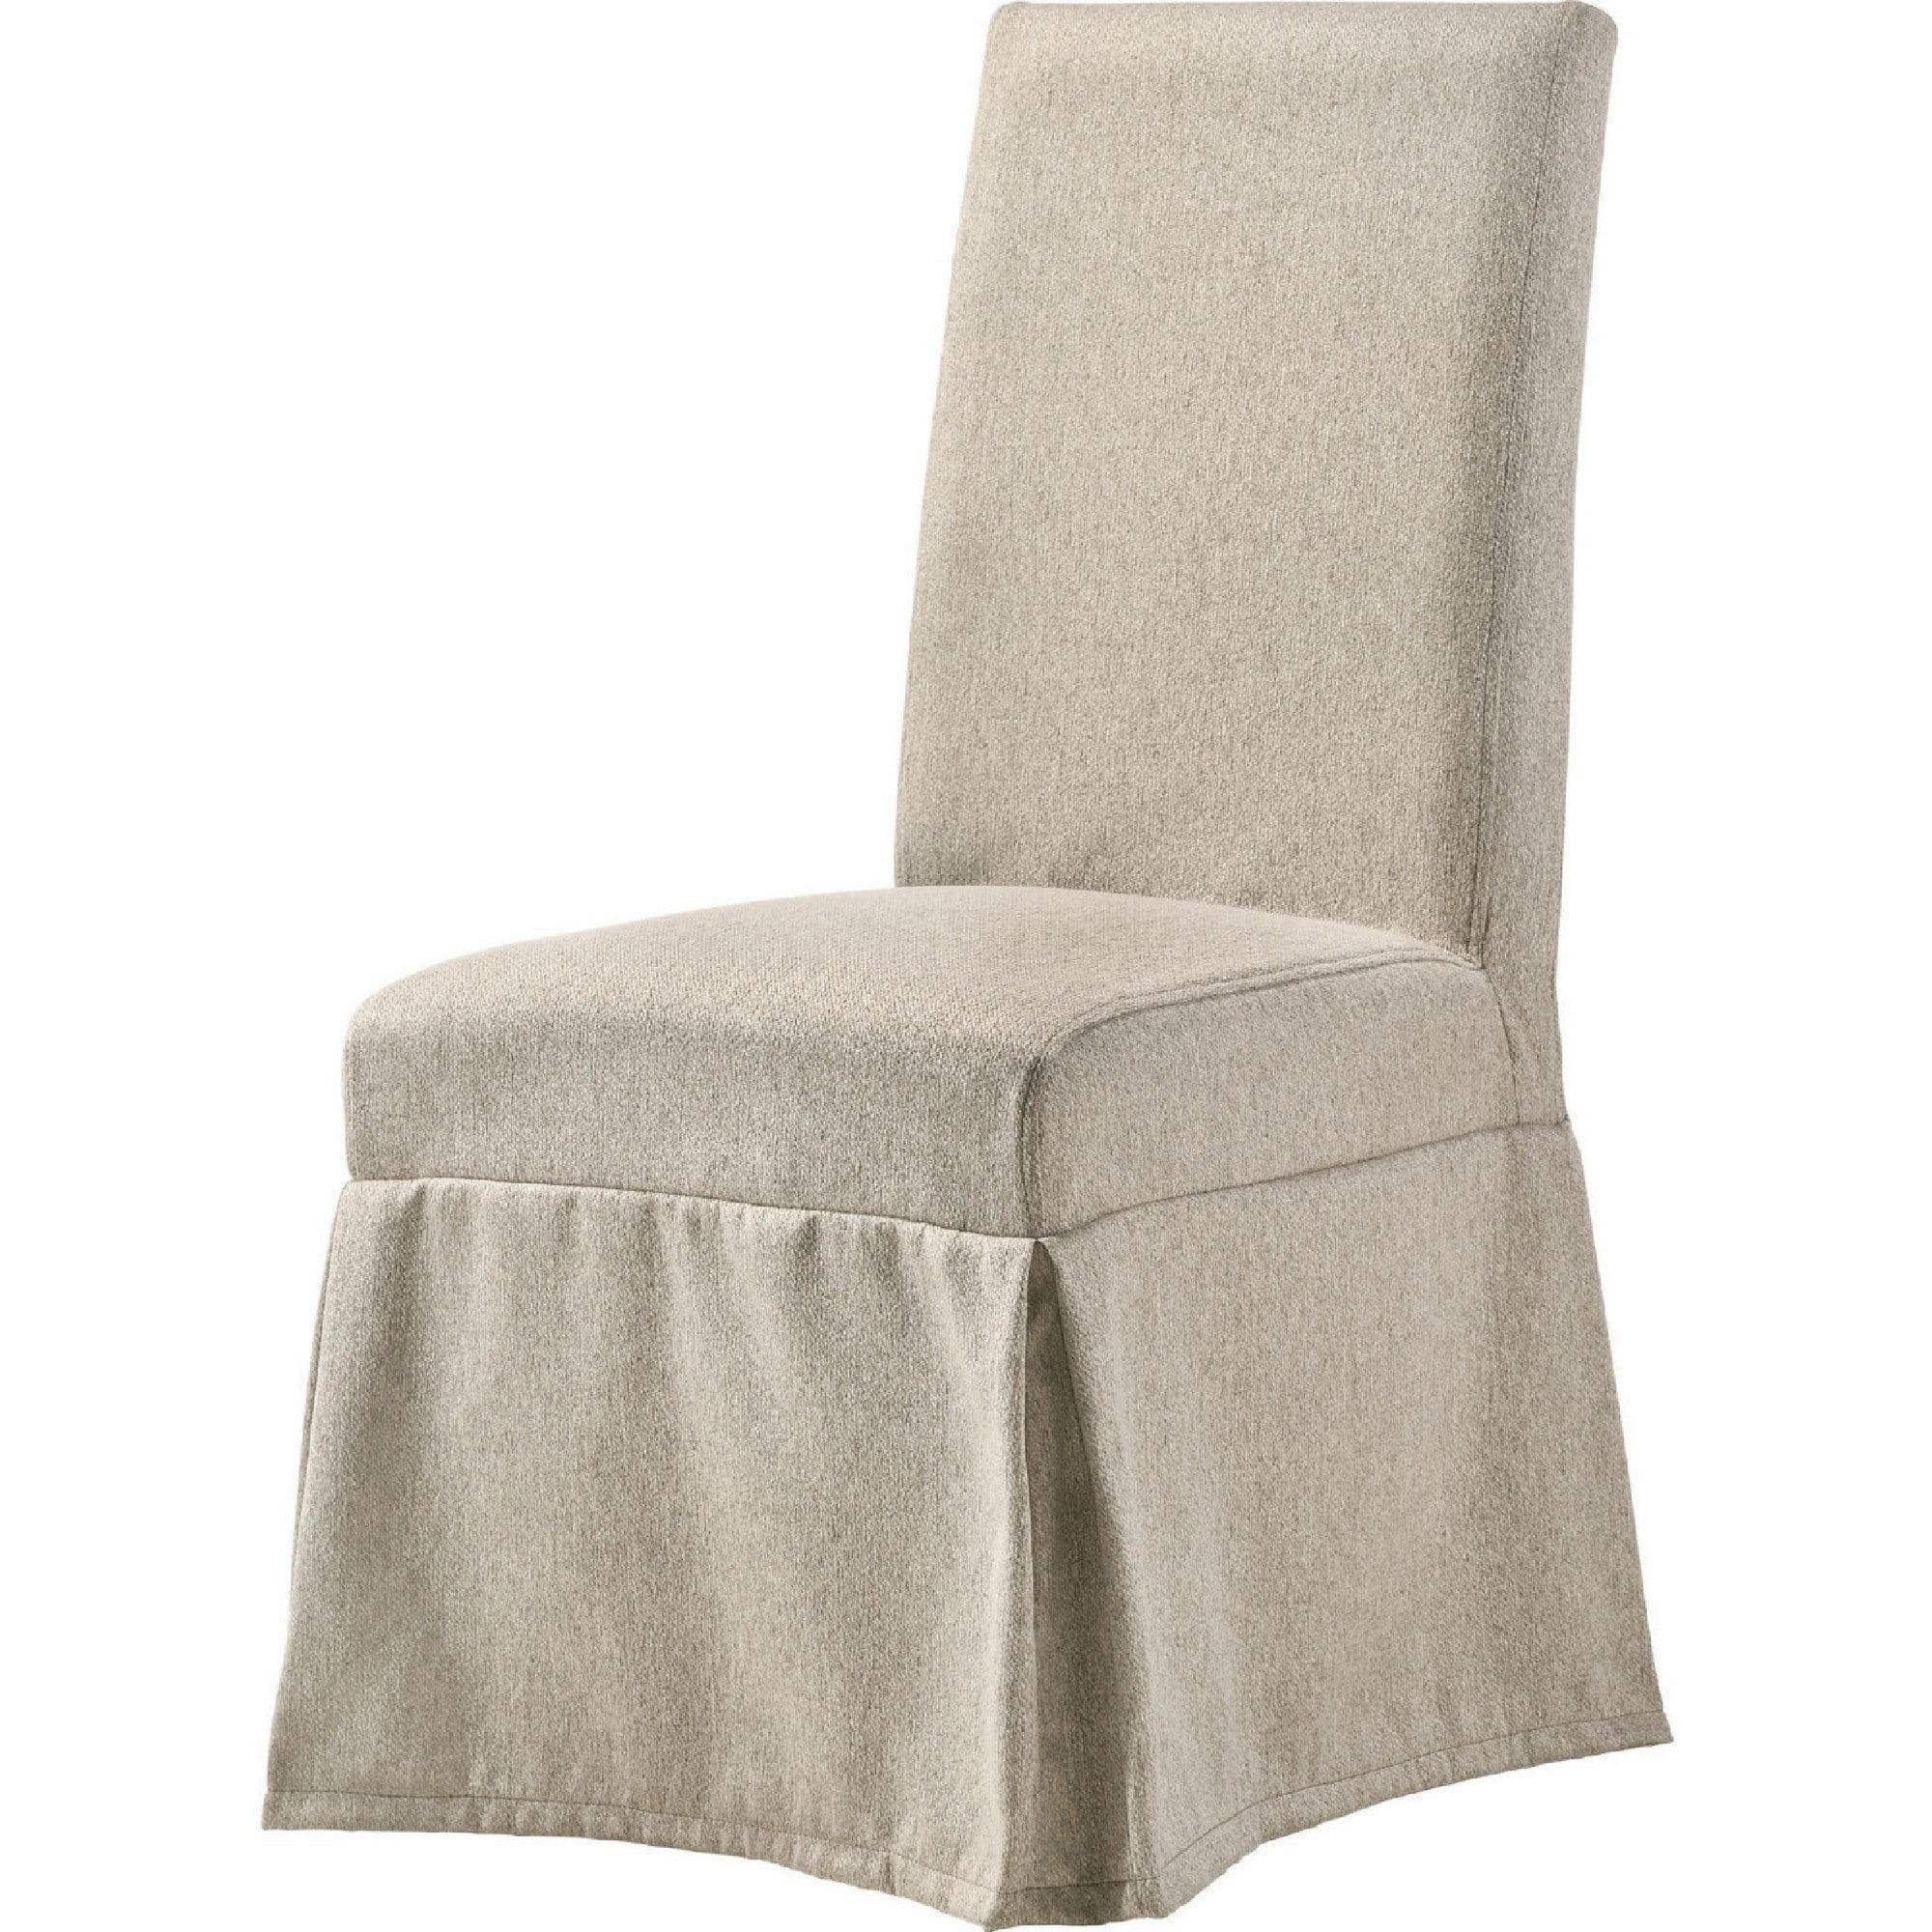 Elegant Beige Upholstered Rubberwood High-Back Side Chair, Set of 2